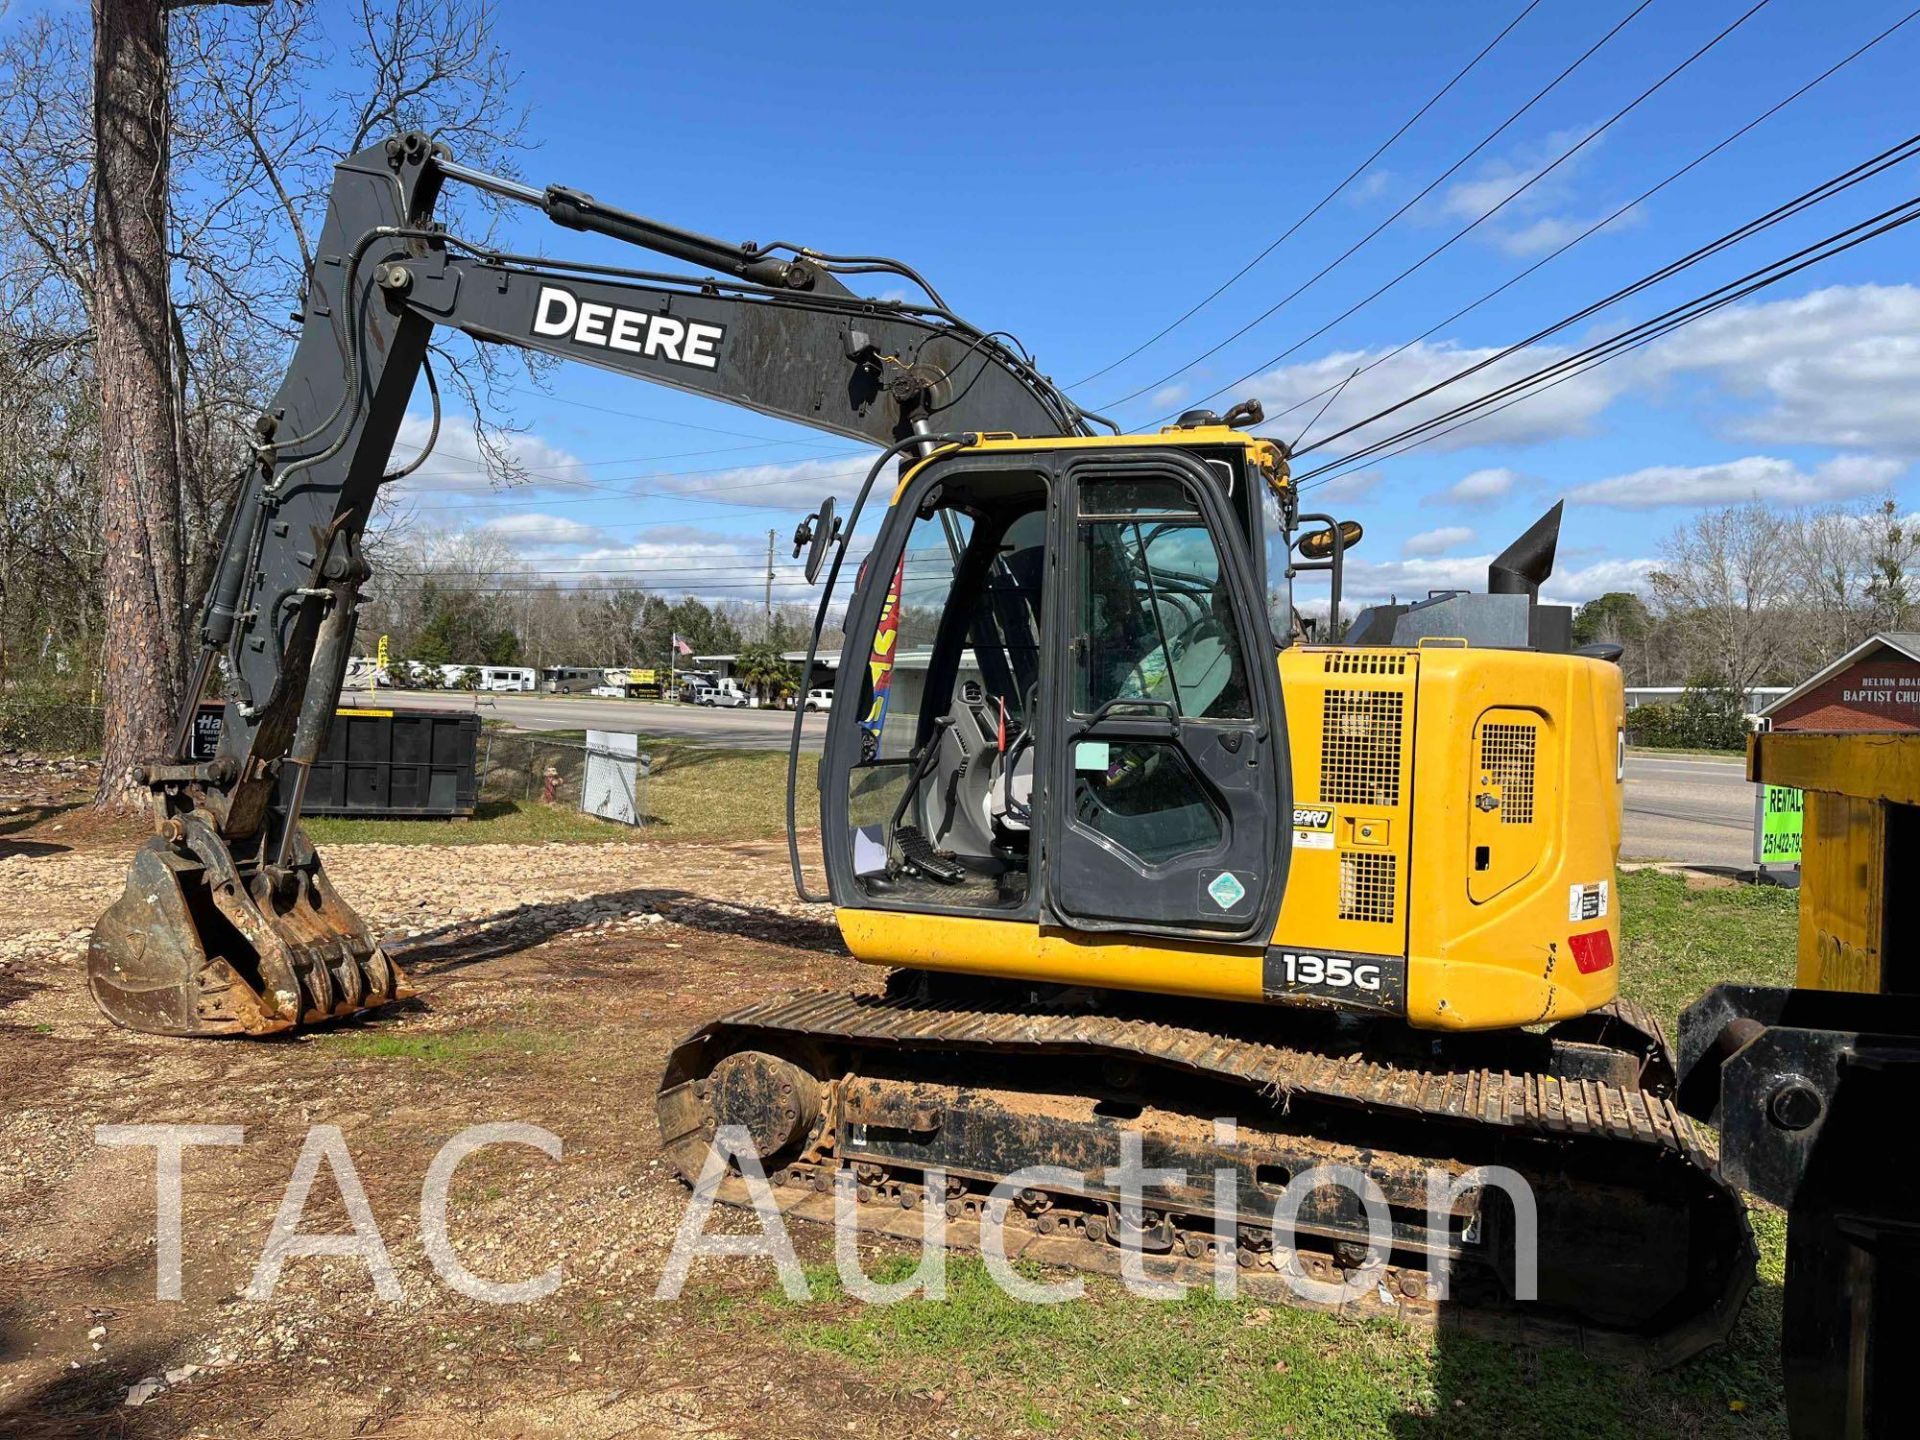 2019 John Deere 135G Excavator - Image 2 of 29